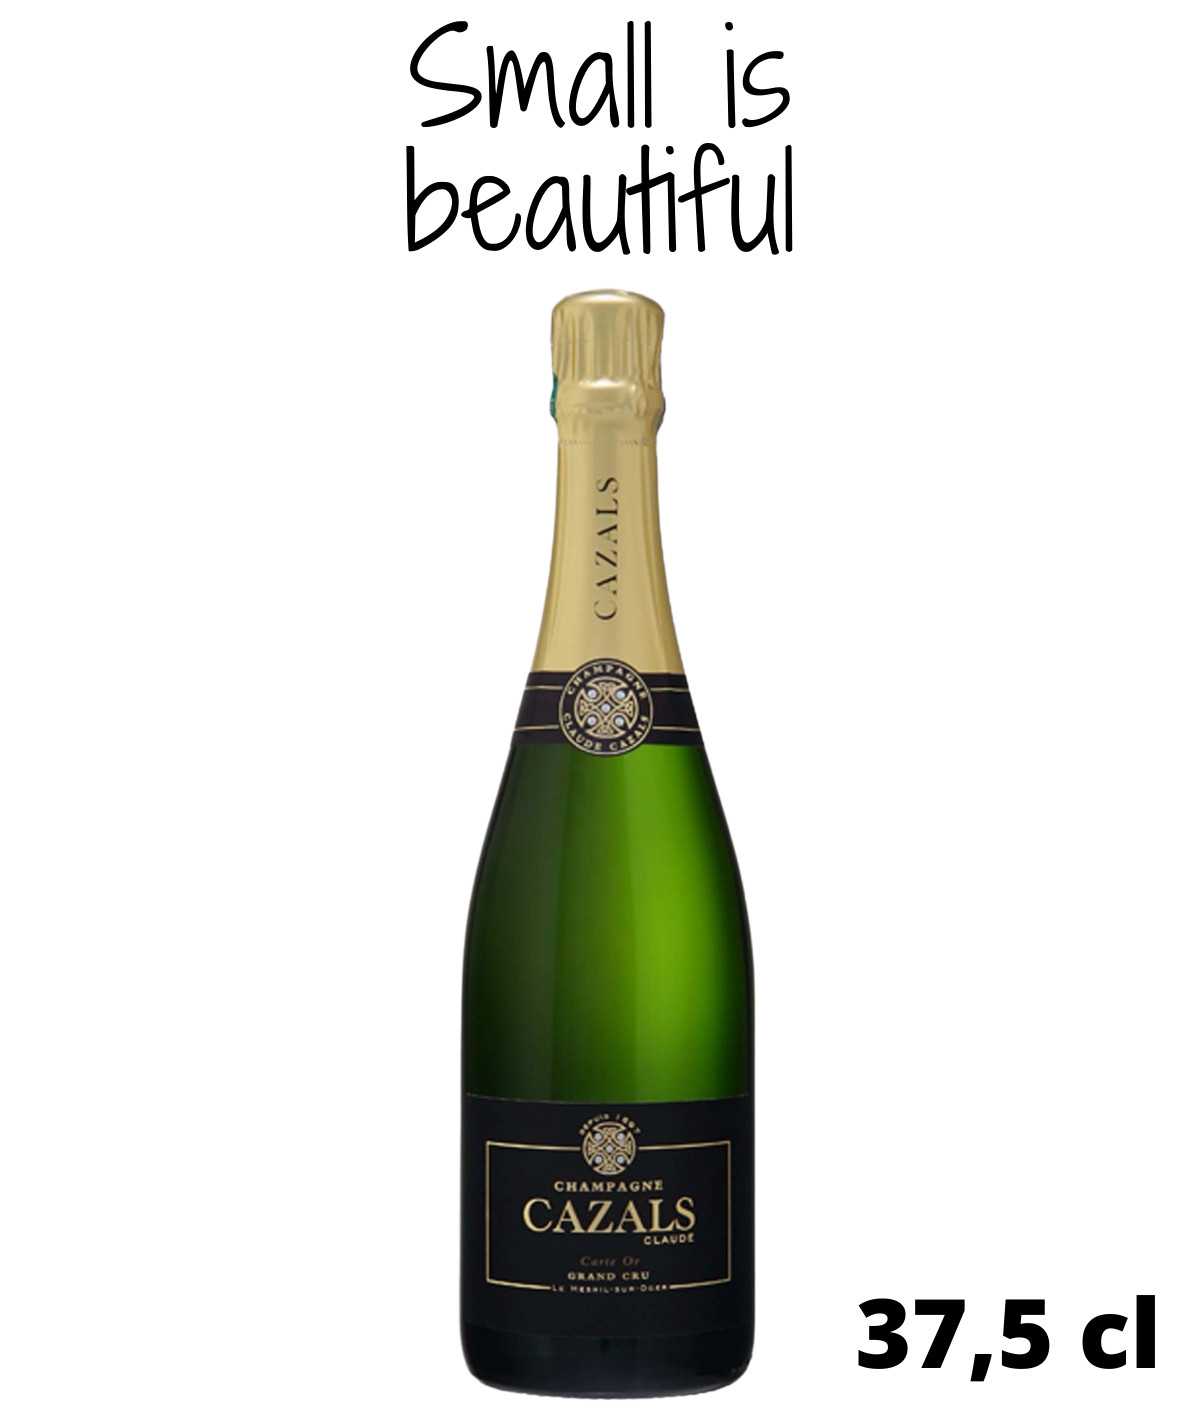 Demi-bouteille de Champagne CLAUDE CAZALS Carte d’Or Grand Cru